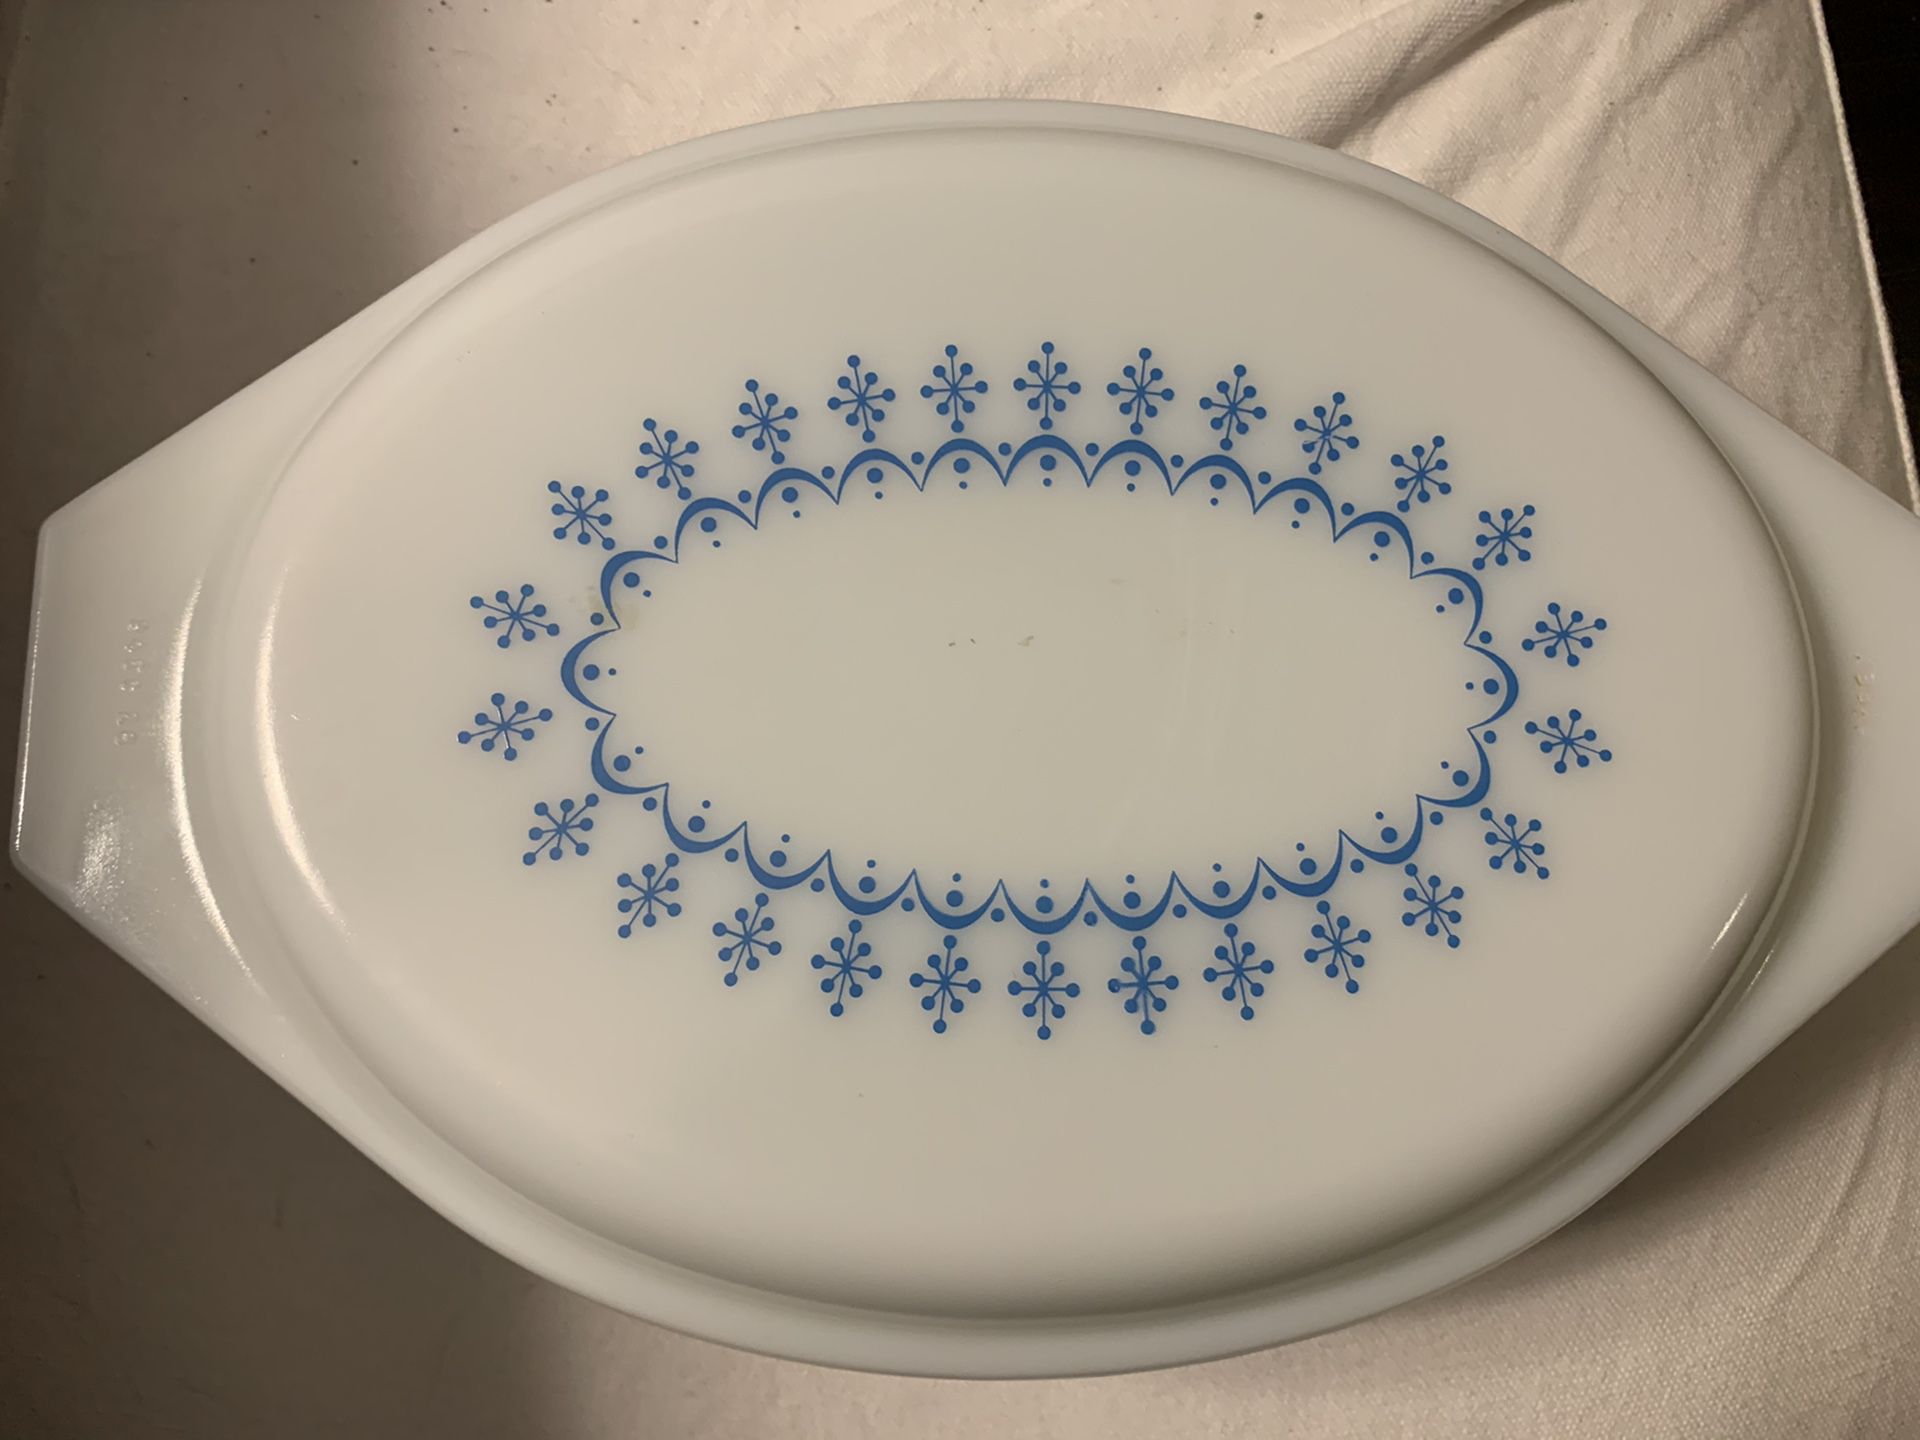 Vintage Pyrex “snowflake” pattern 2.5 quart baking dish